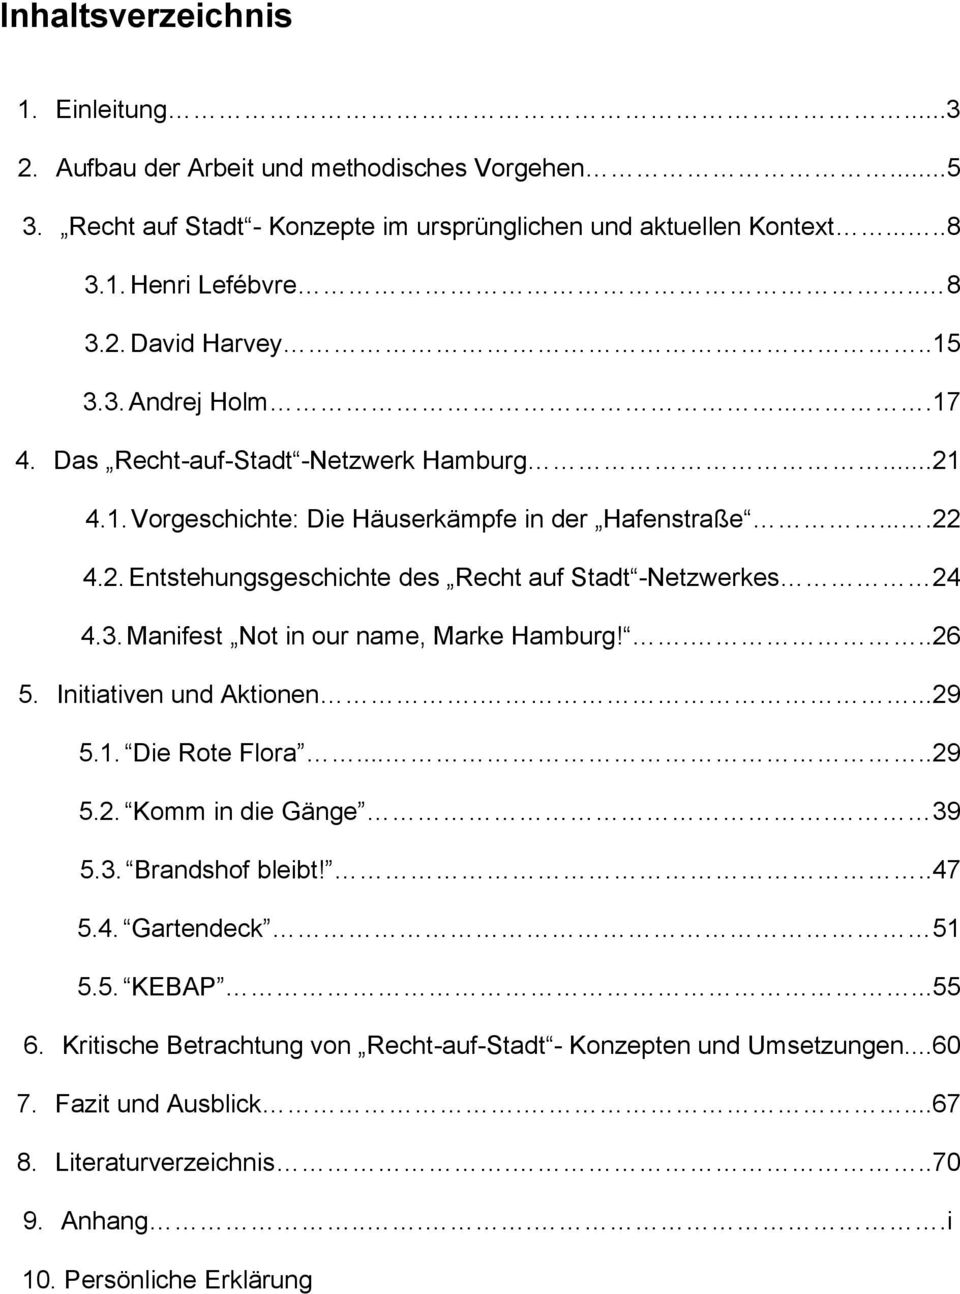 3. Manifest Not in our name, Marke Hamburg!...26 5. Initiativen und Aktionen....29 5.1. Die Rote Flora.....29 5.2. Komm in die Gänge. 39 5.3. Brandshof bleibt!..47 5.4. Gartendeck 51 5.5. KEBAP.